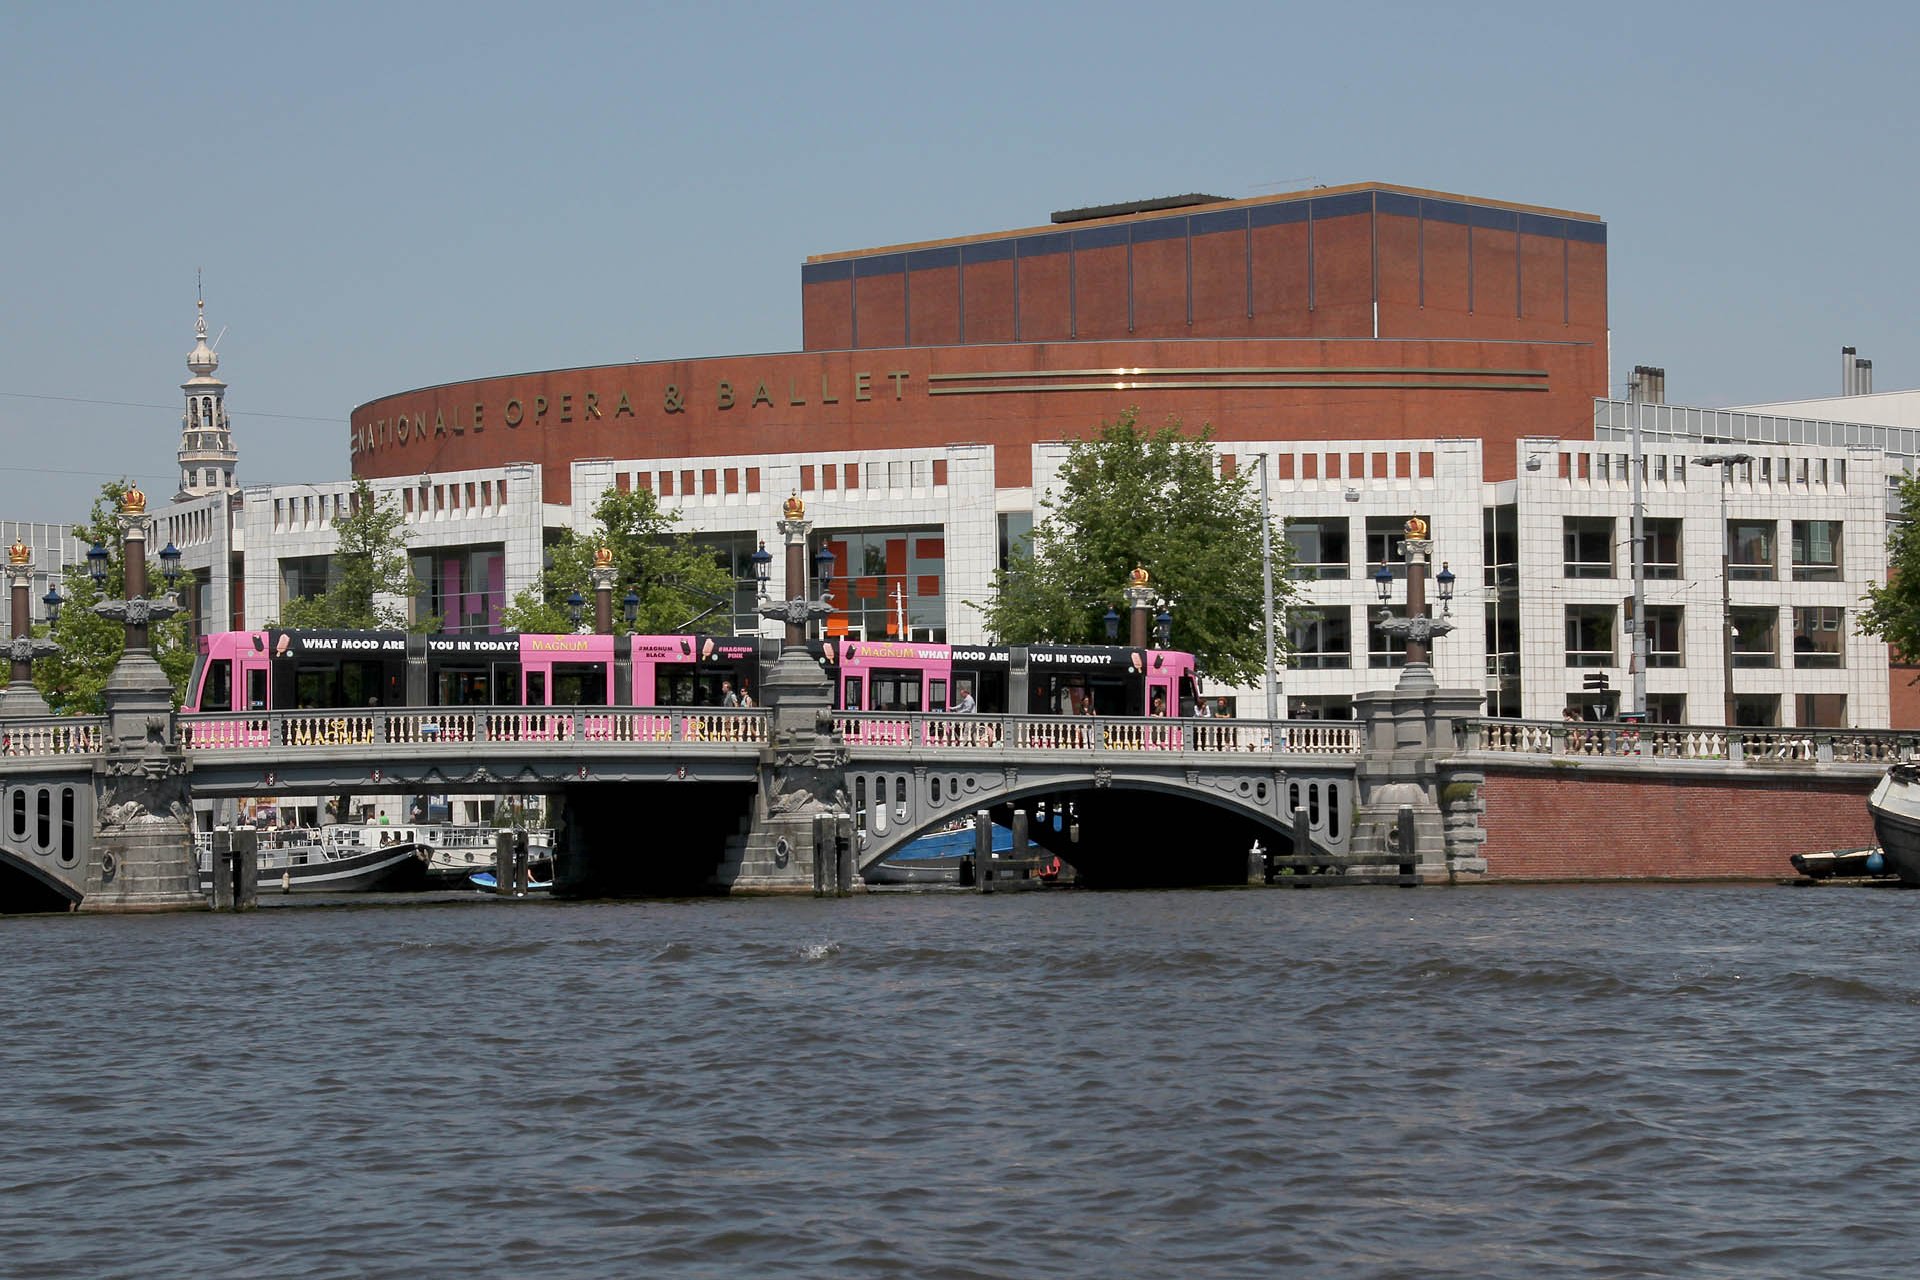 8868_57 In Amsterdam gibt es ein paar Brücken, auch über diese fahren Combinos. (im Hintergrund die Oper). In Amsterdam are some bridges, also used by Combino trams. In the background the Opera house).